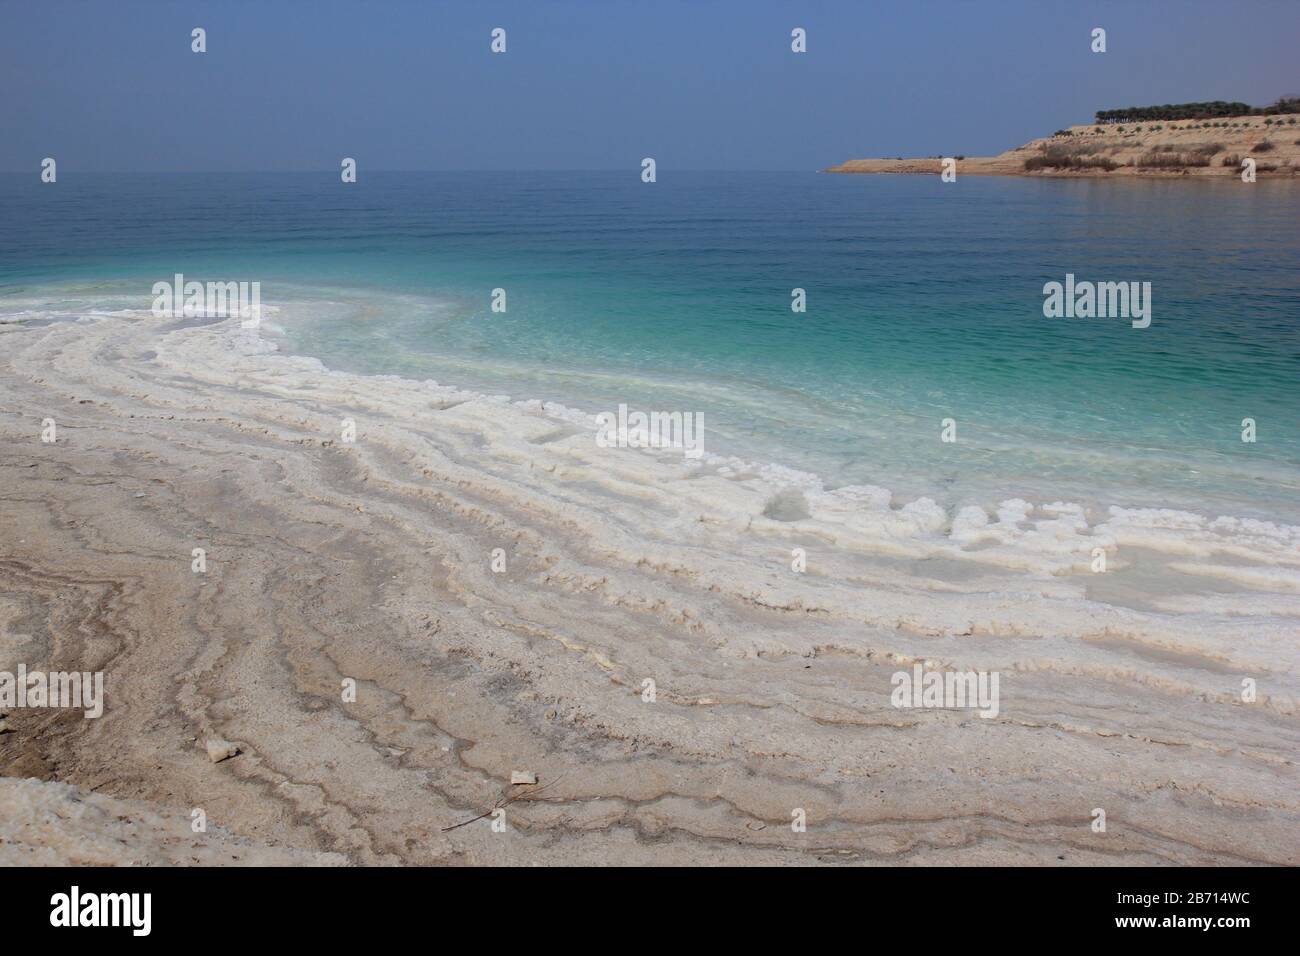 Rive salée de la mer Morte, zone d'altitude la plus basse sur Terre, Jordanie, Asie occidentale Banque D'Images